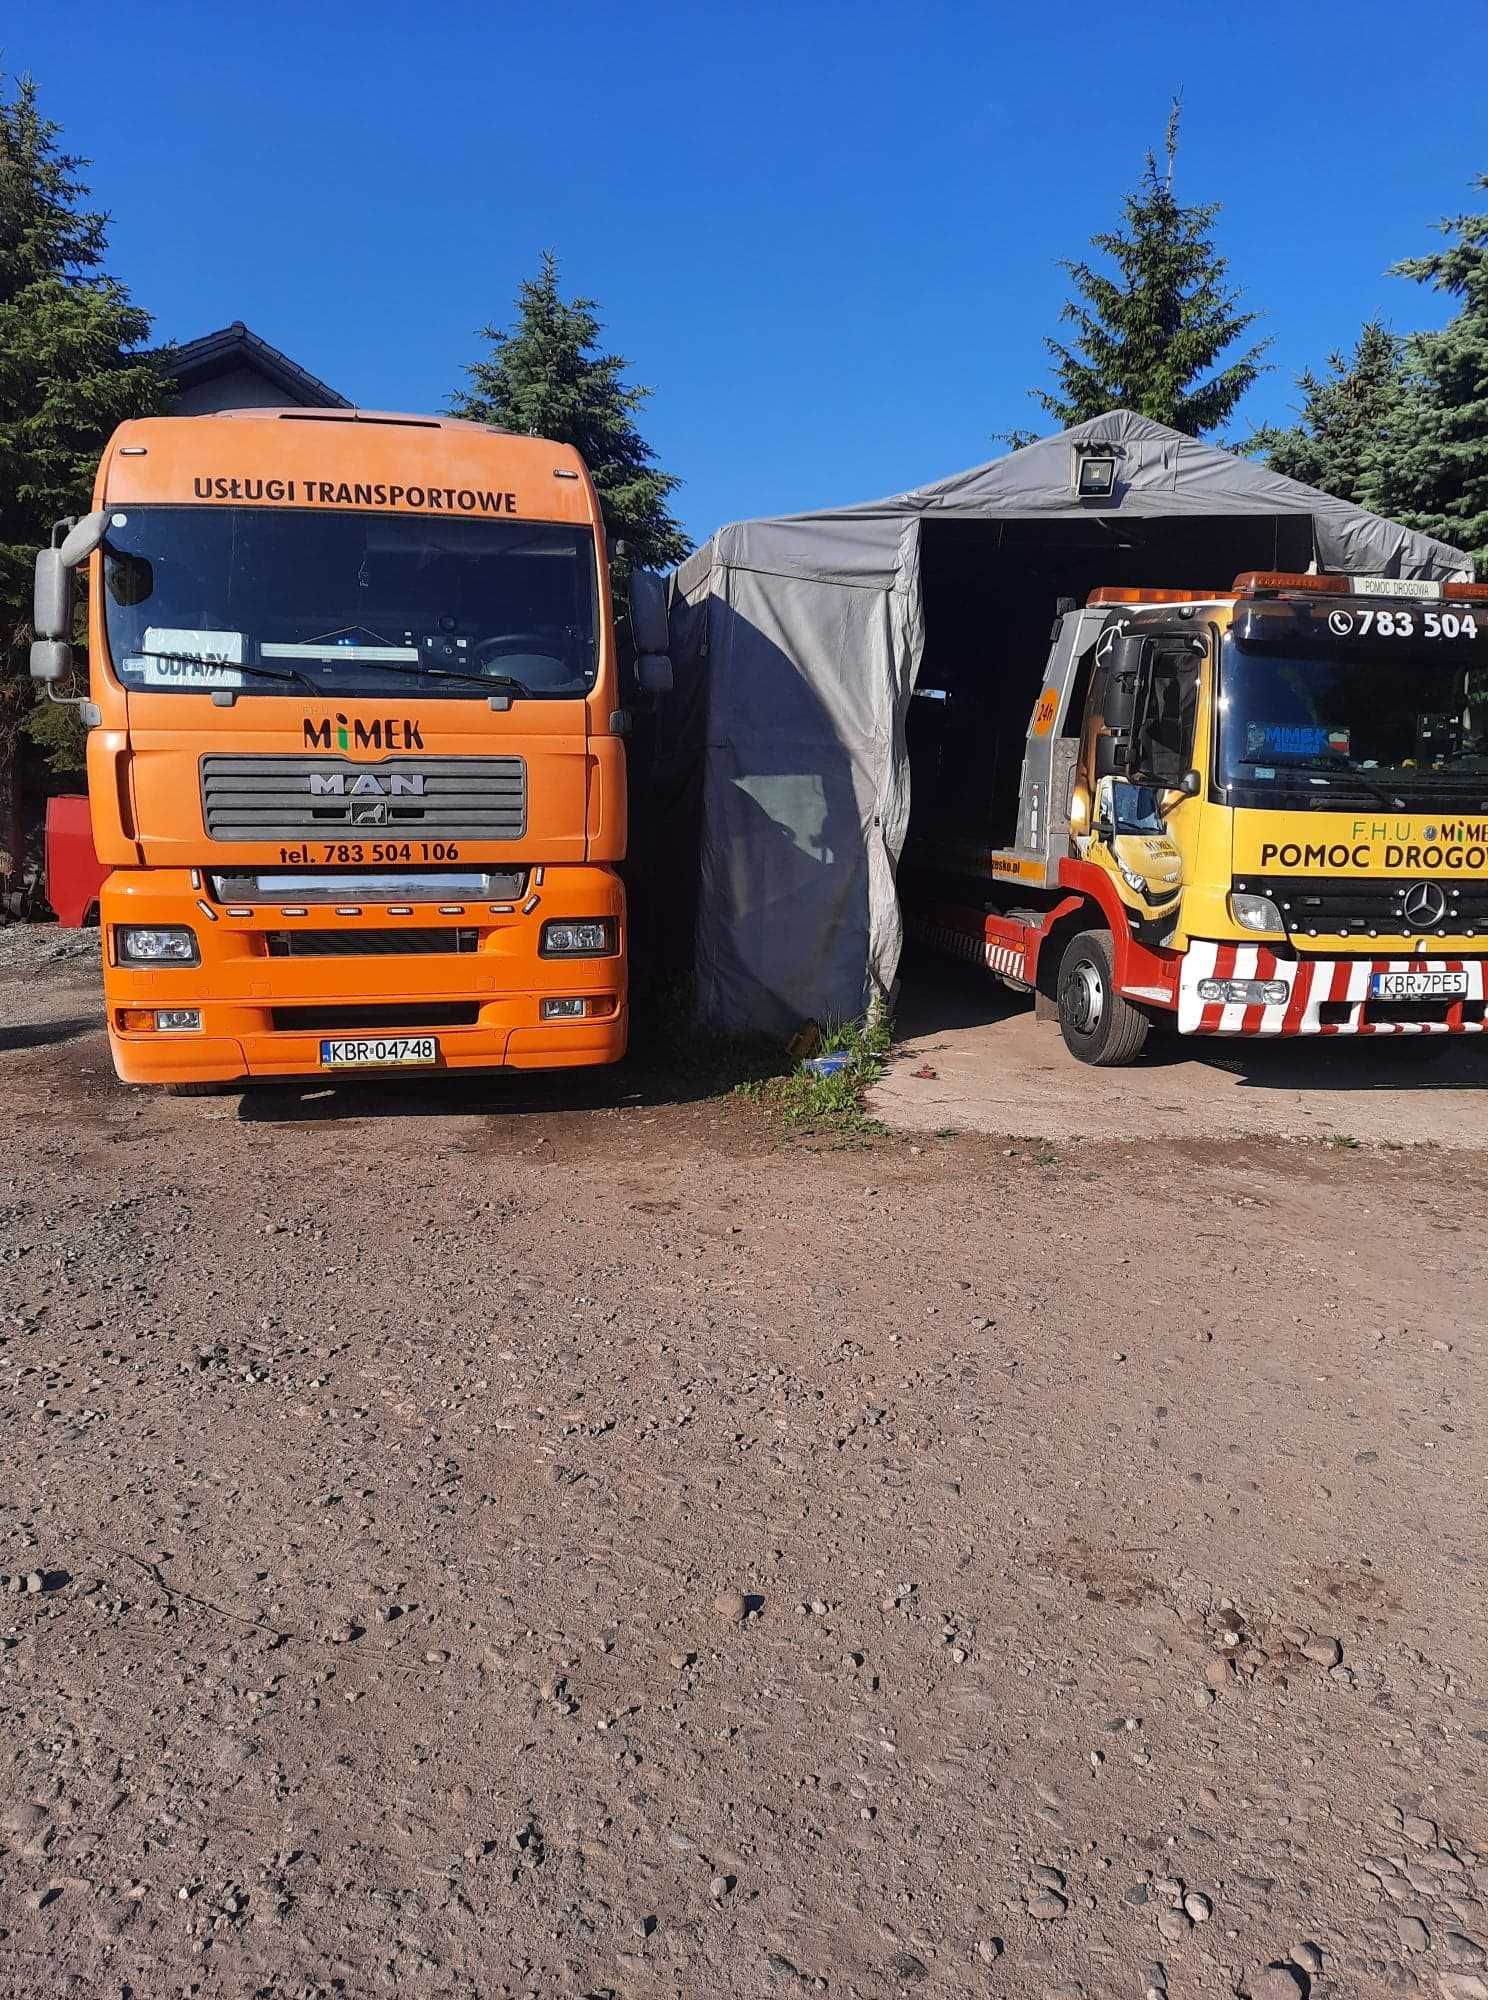 Pomoc Drogowa Brzesko Usługi transportowe   Skup złomu